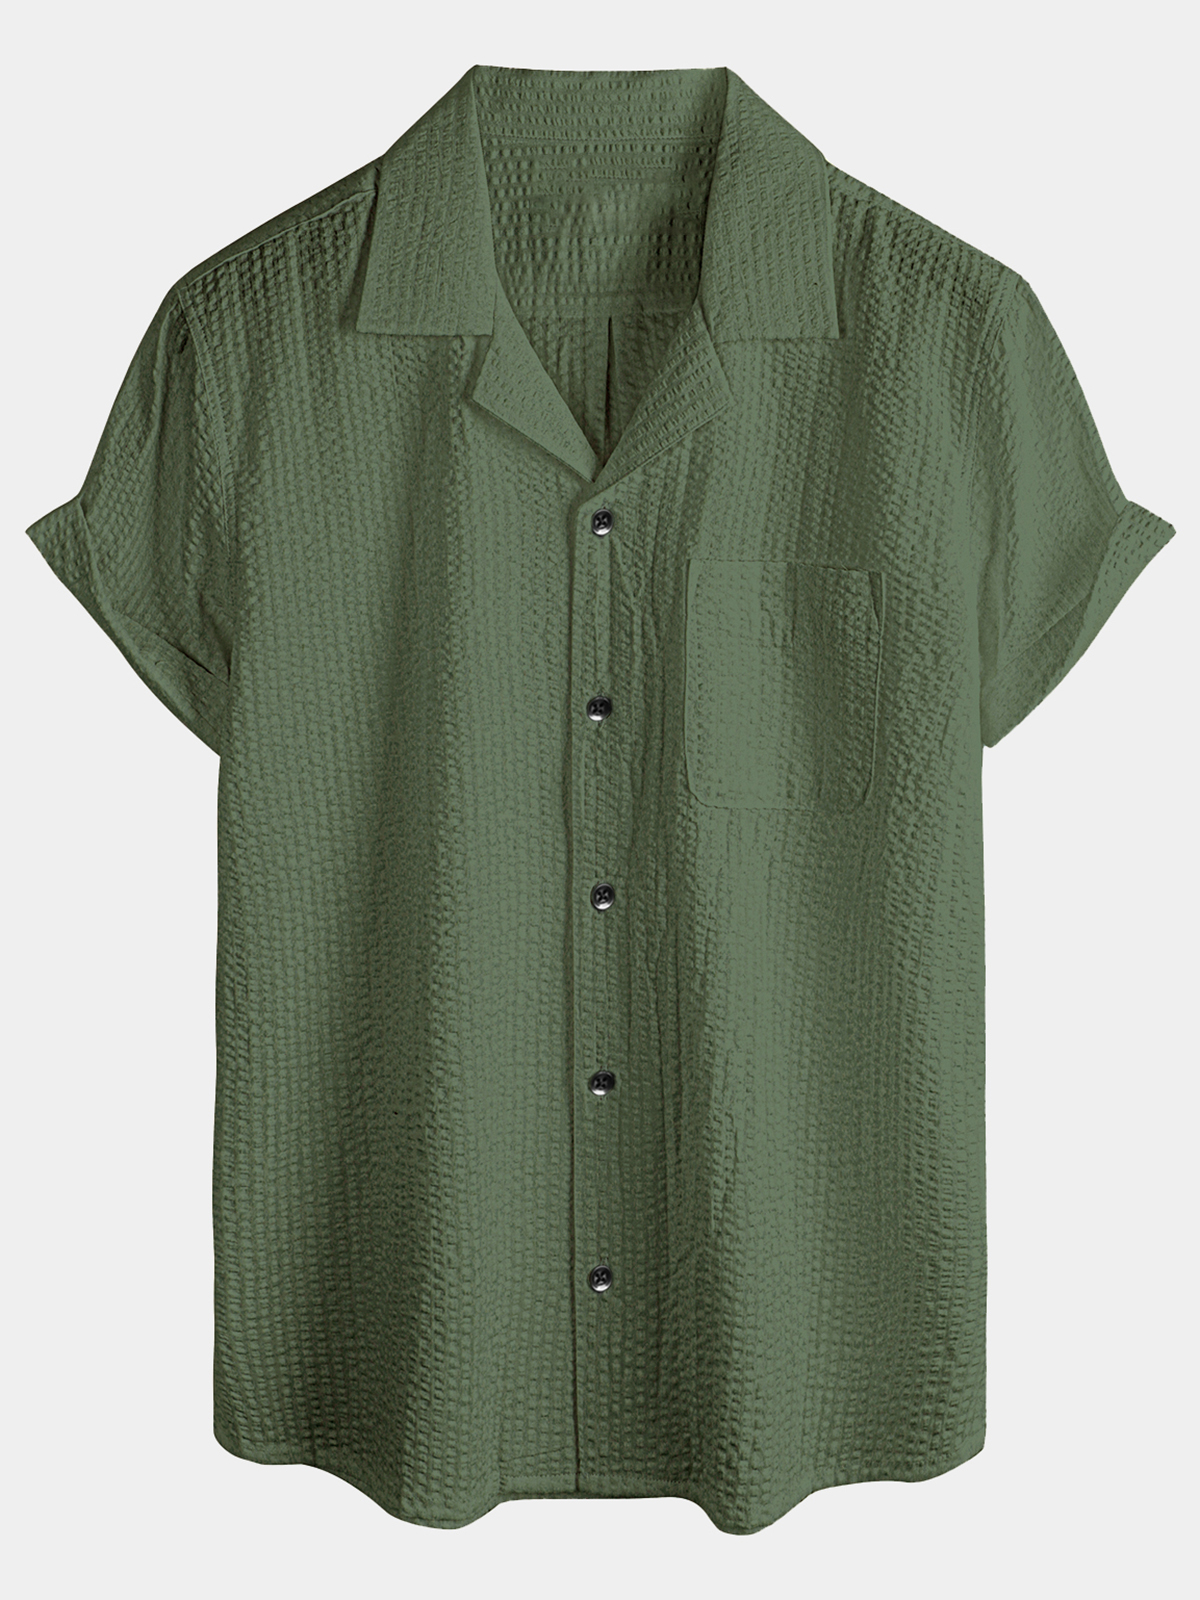 Men's Summer Casual Button Up 100% Cotton Short Sleeve Beach Hawaiian Shirt